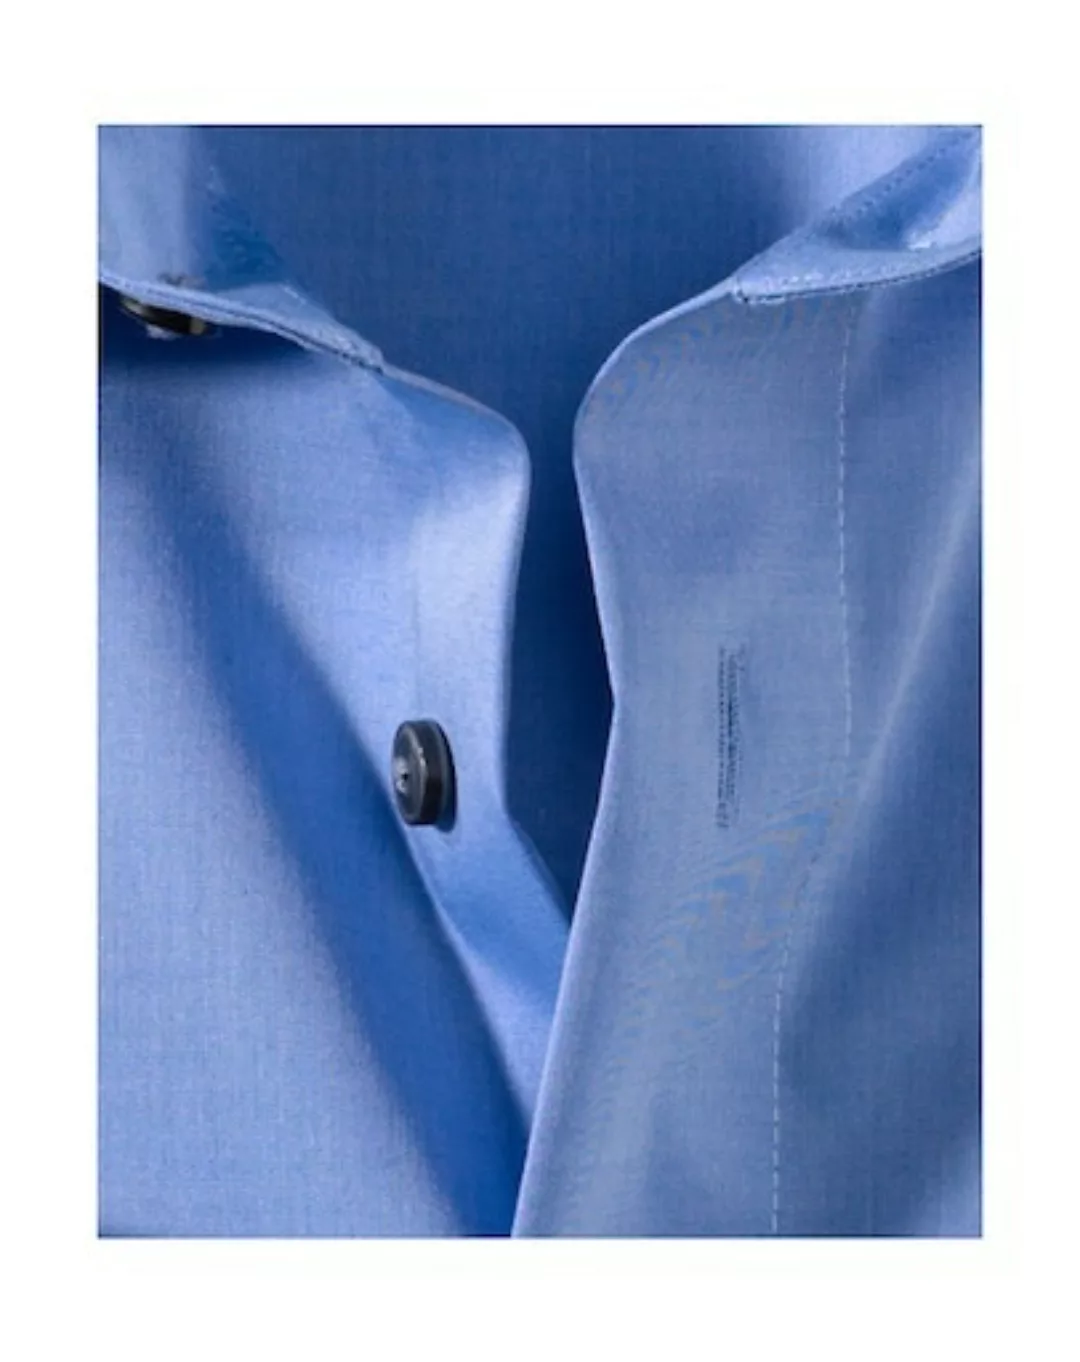 OLYMP Businesshemd Luxor comfort-fit Kurzarmhemd mit Brusttasche, bügelfrei günstig online kaufen